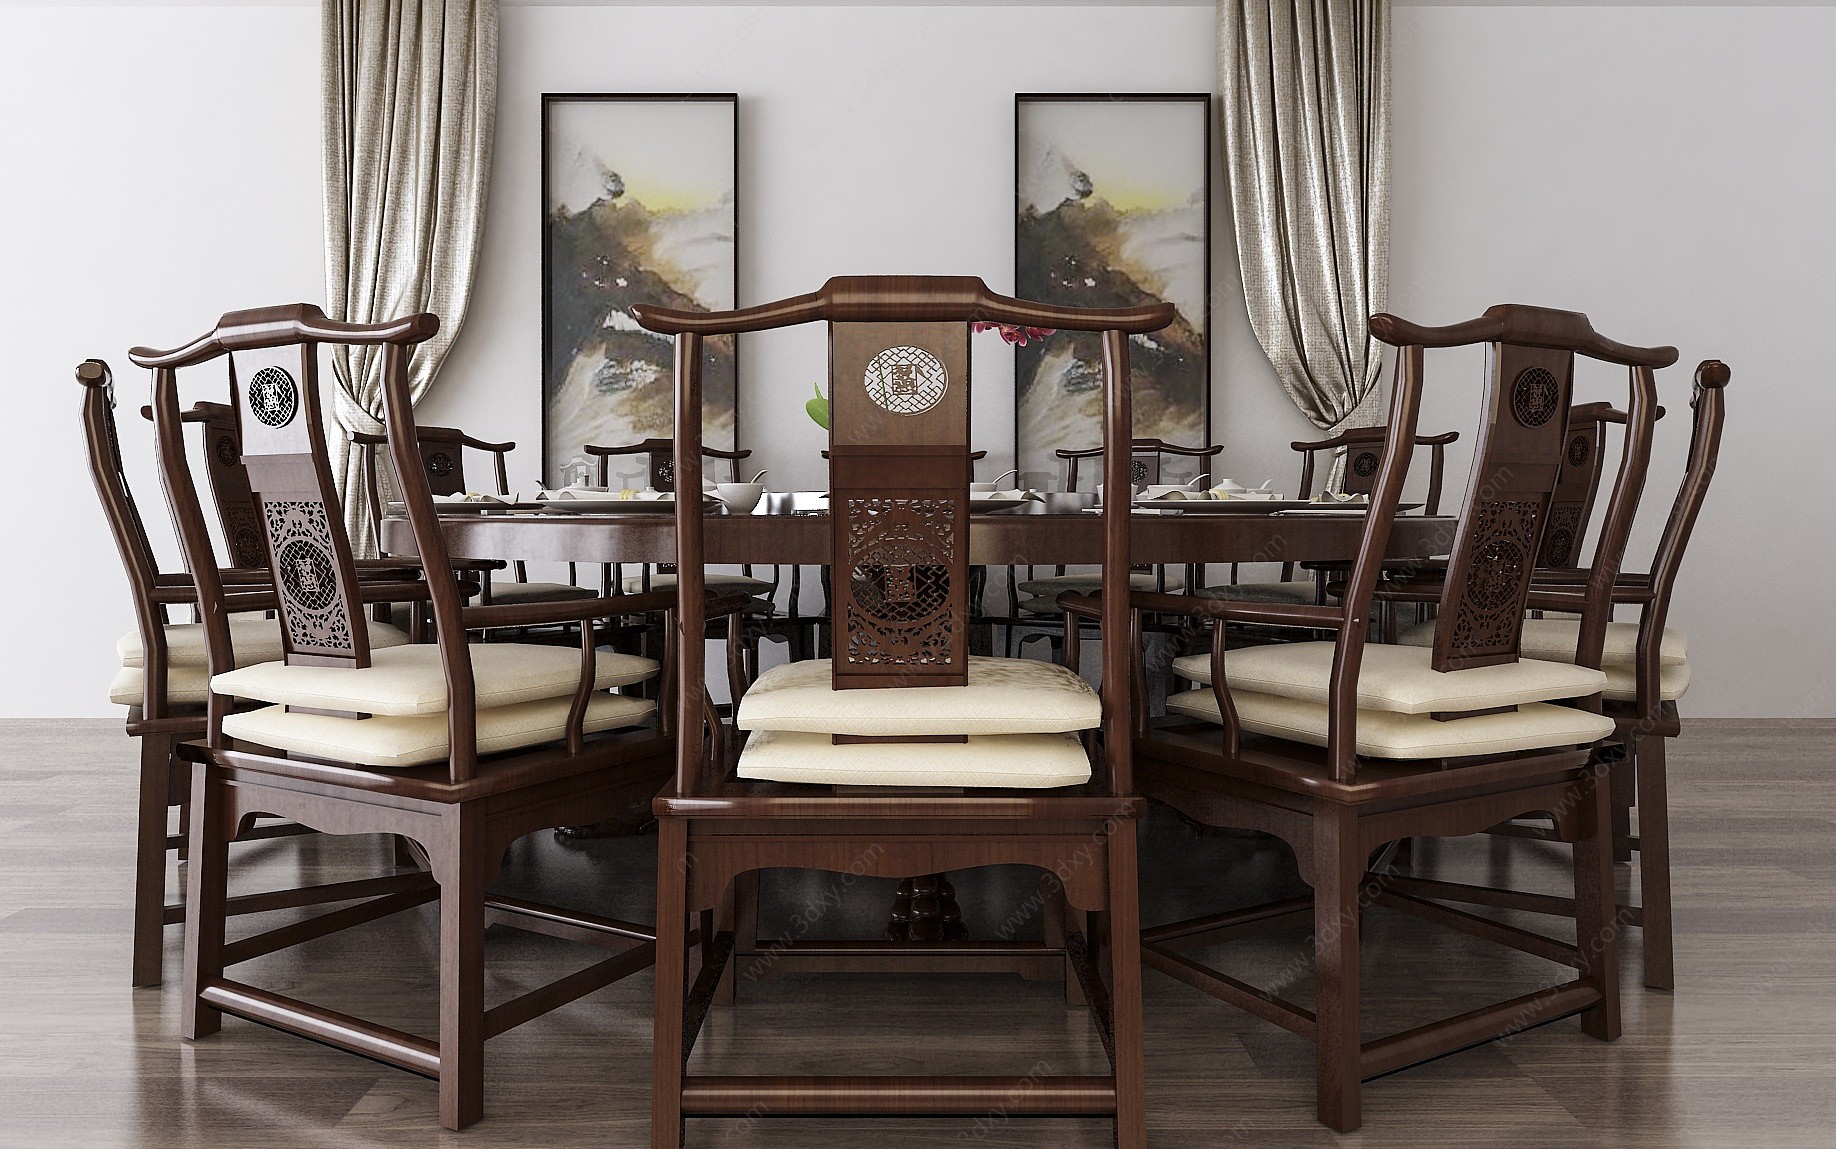 中式餐桌椅壁画窗帘3D模型